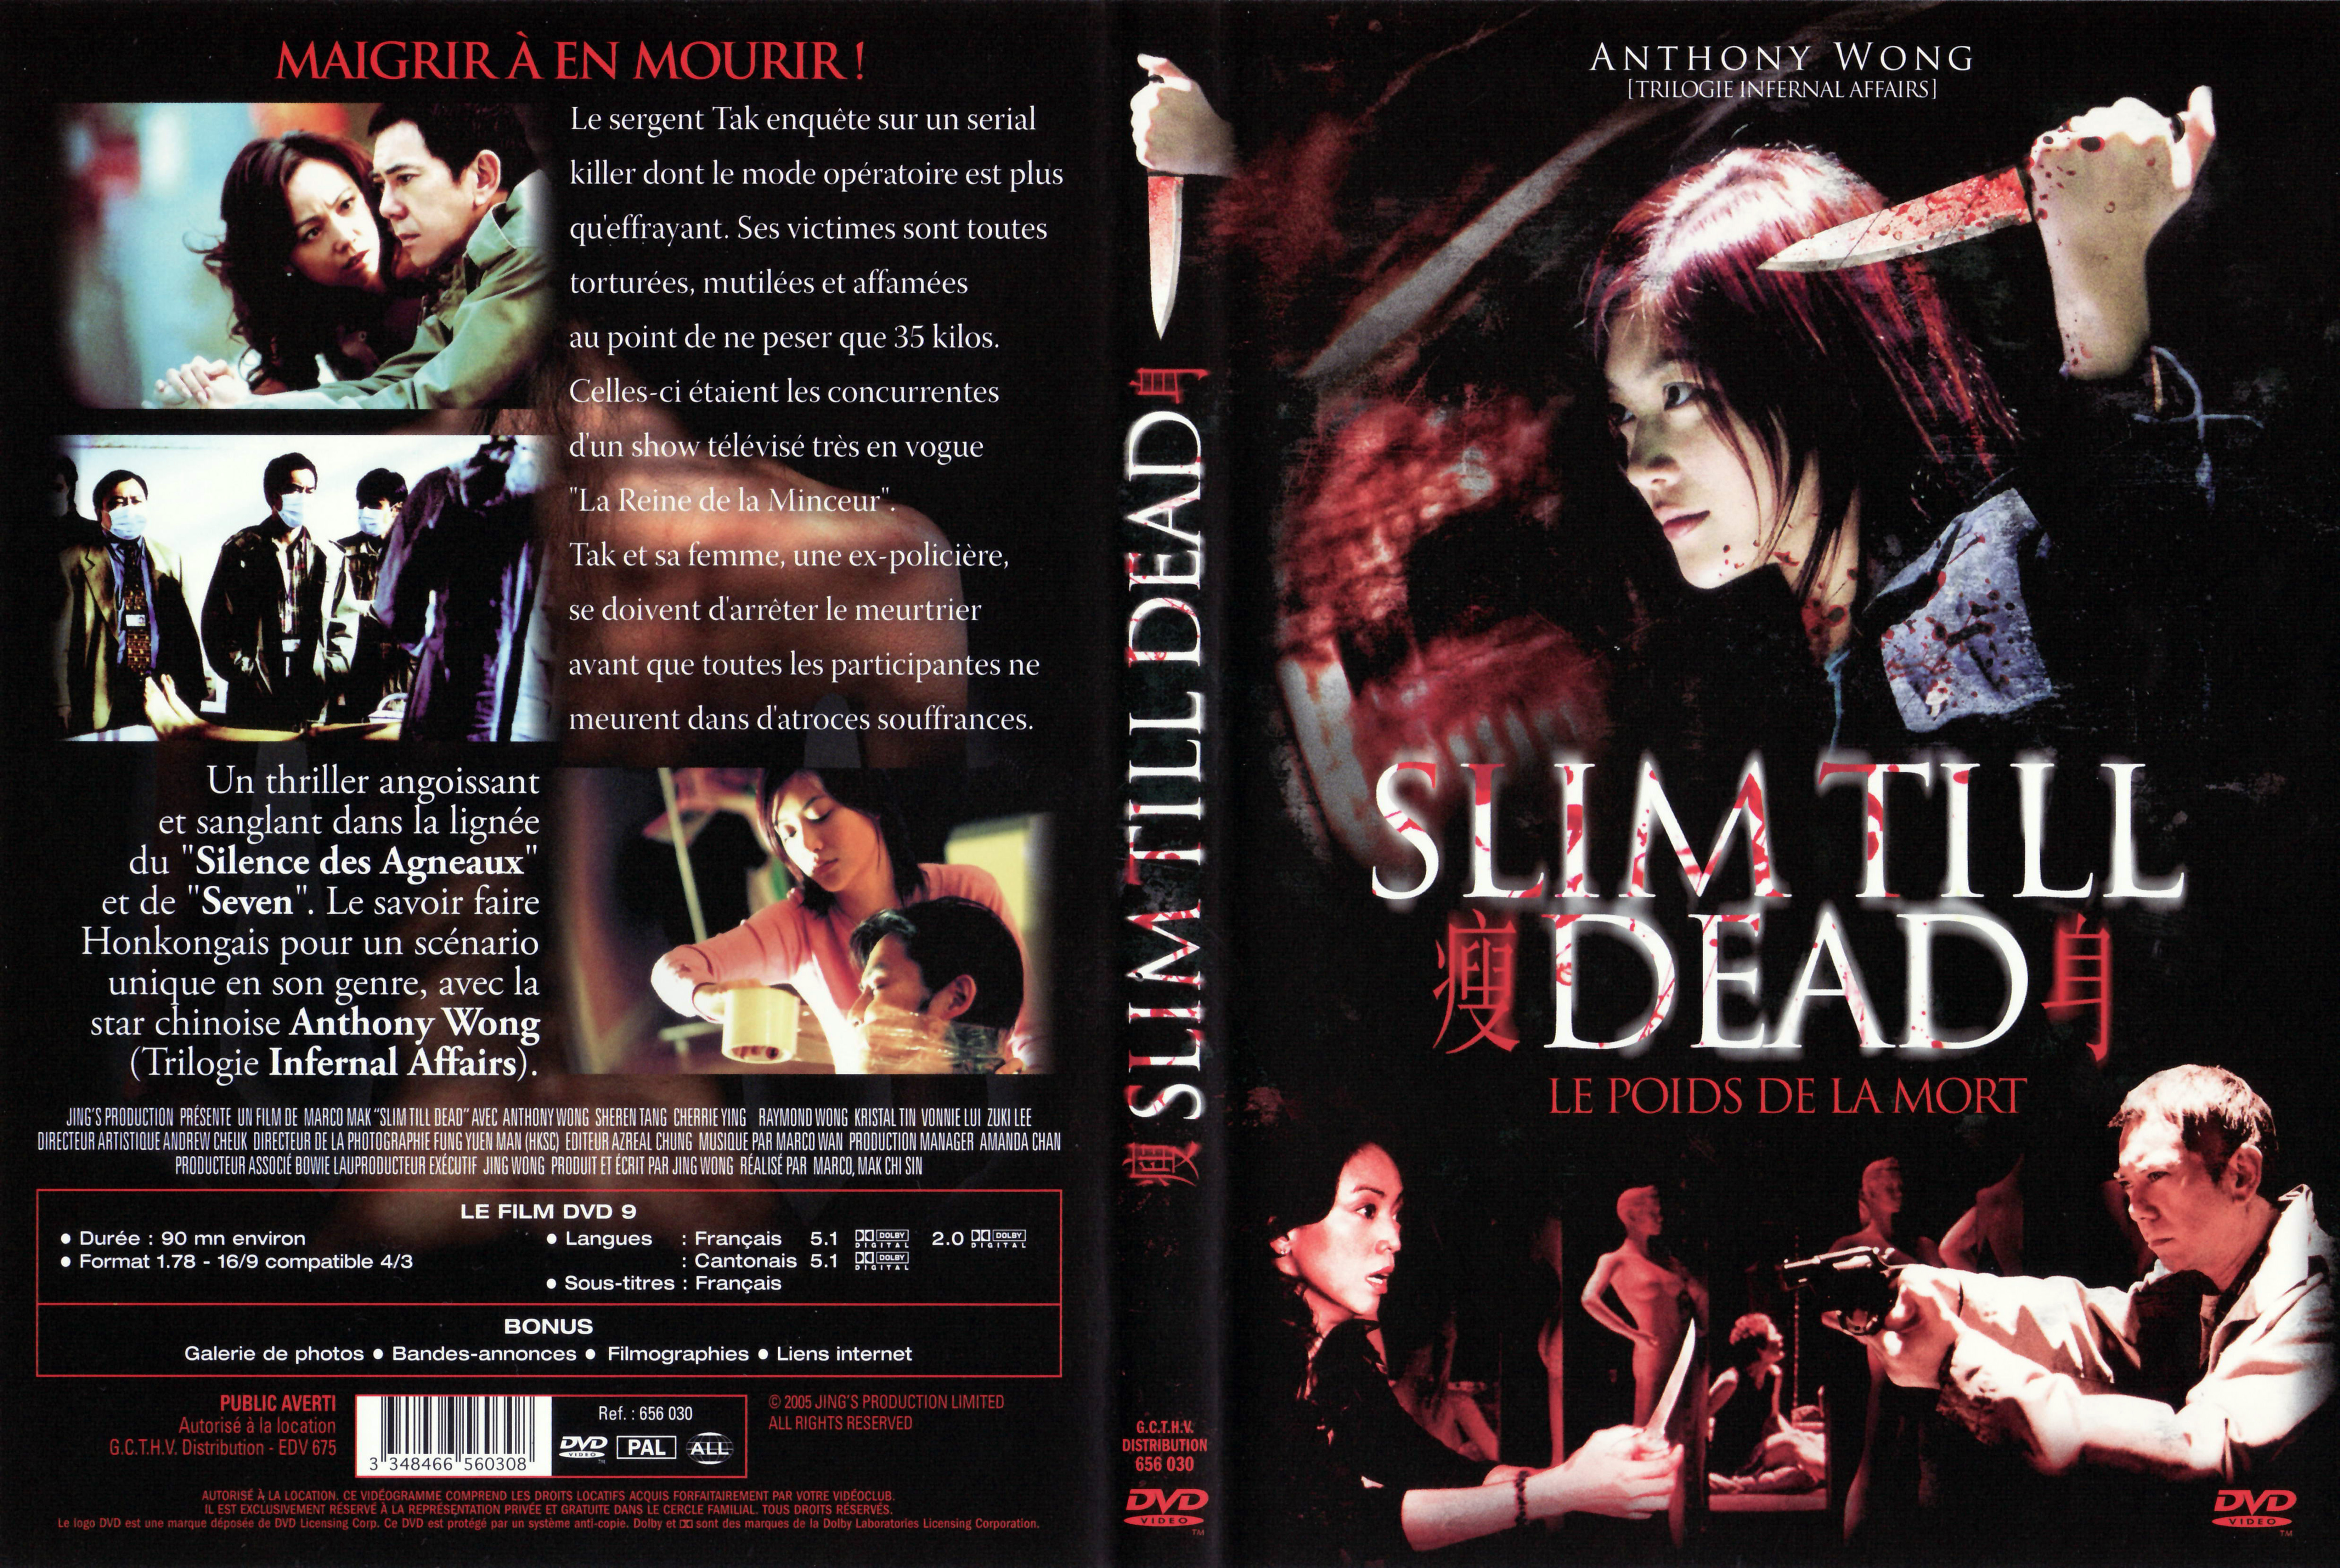 Jaquette DVD Slim till dead